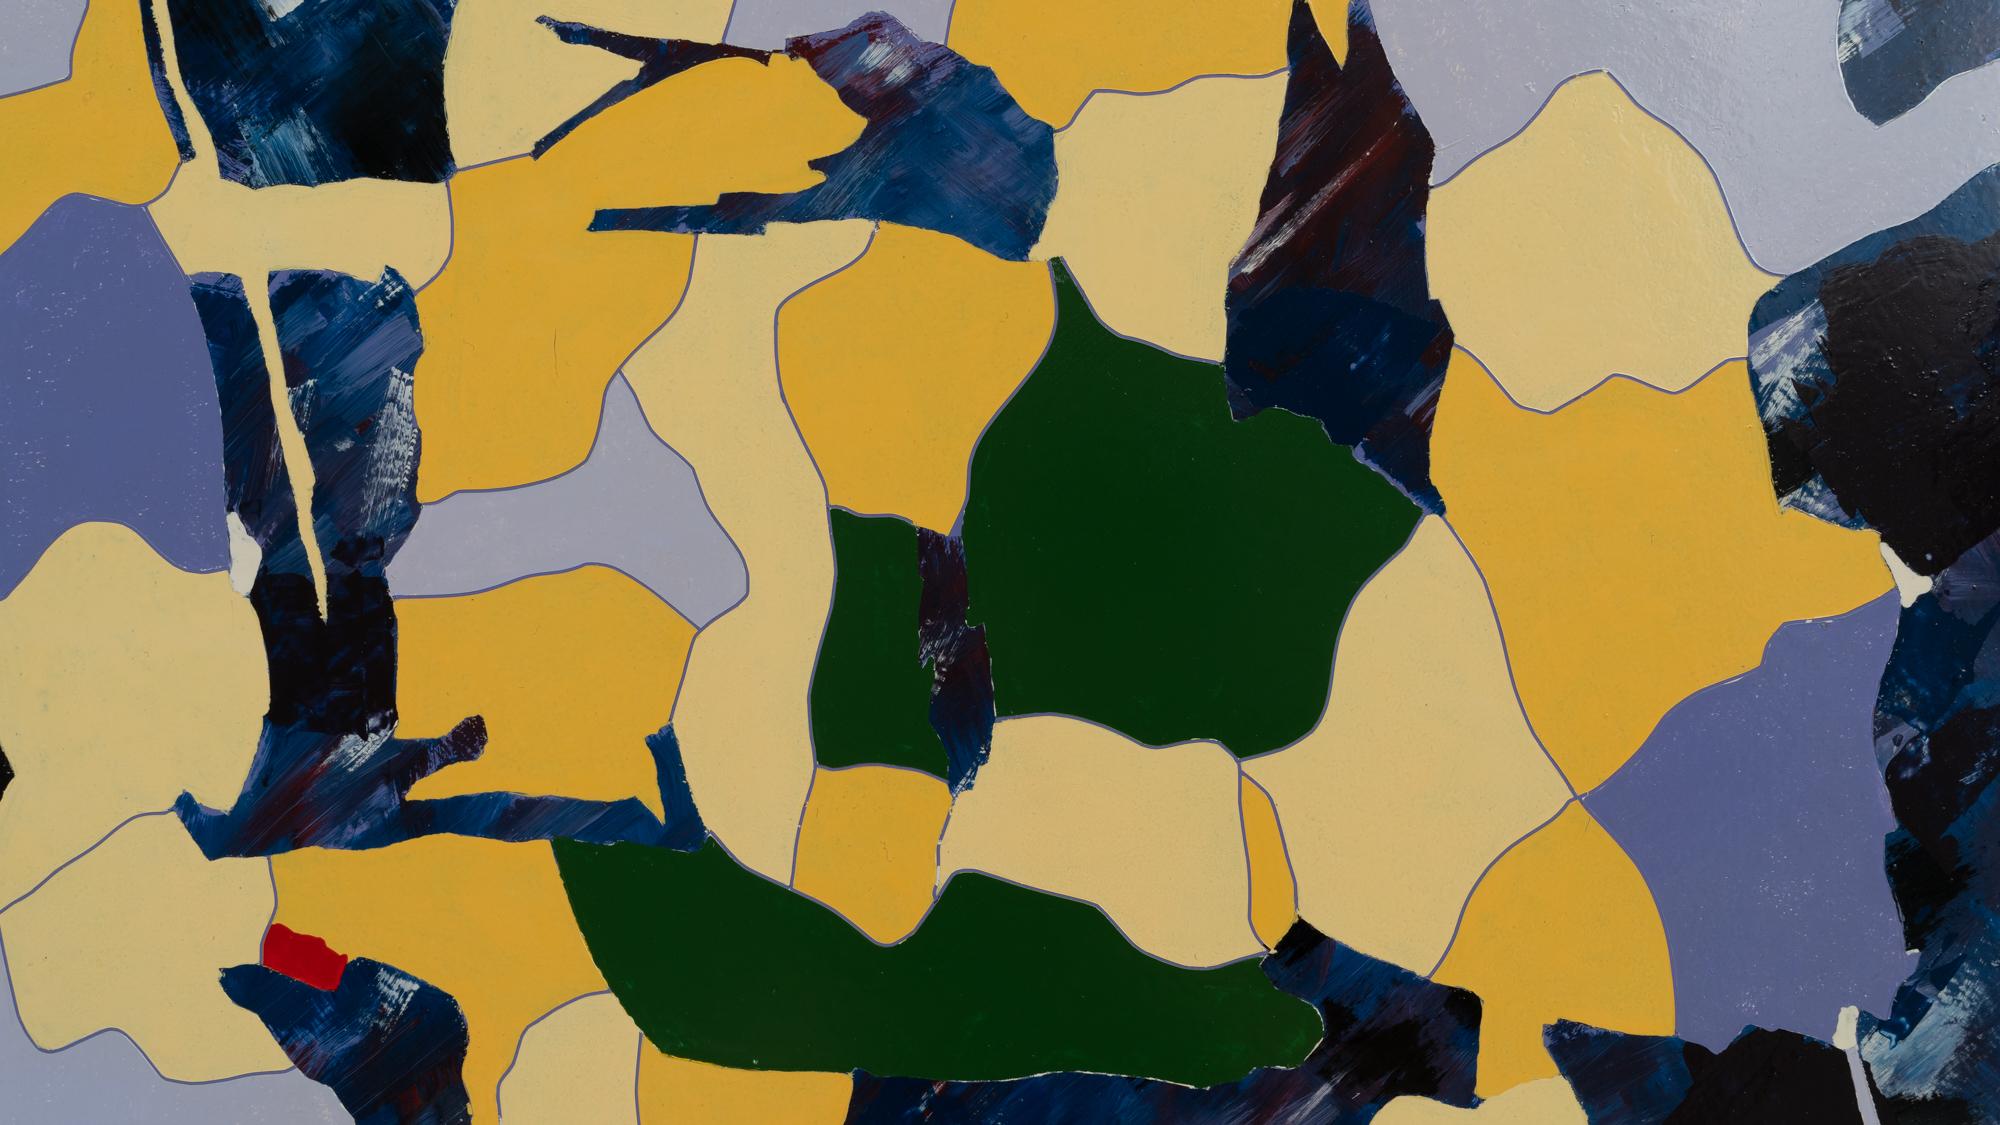 Beflügeln Sie Ihre Fantasie mit diesem lebendigen belgischen Kunstwerk des 20. Jahrhunderts von René Berdal. Diese dynamische Komposition strotzt nur so vor abstrakten Formen, einer kühnen Farbpalette aus Gelb, Blau und Grün, durchsetzt mit einem